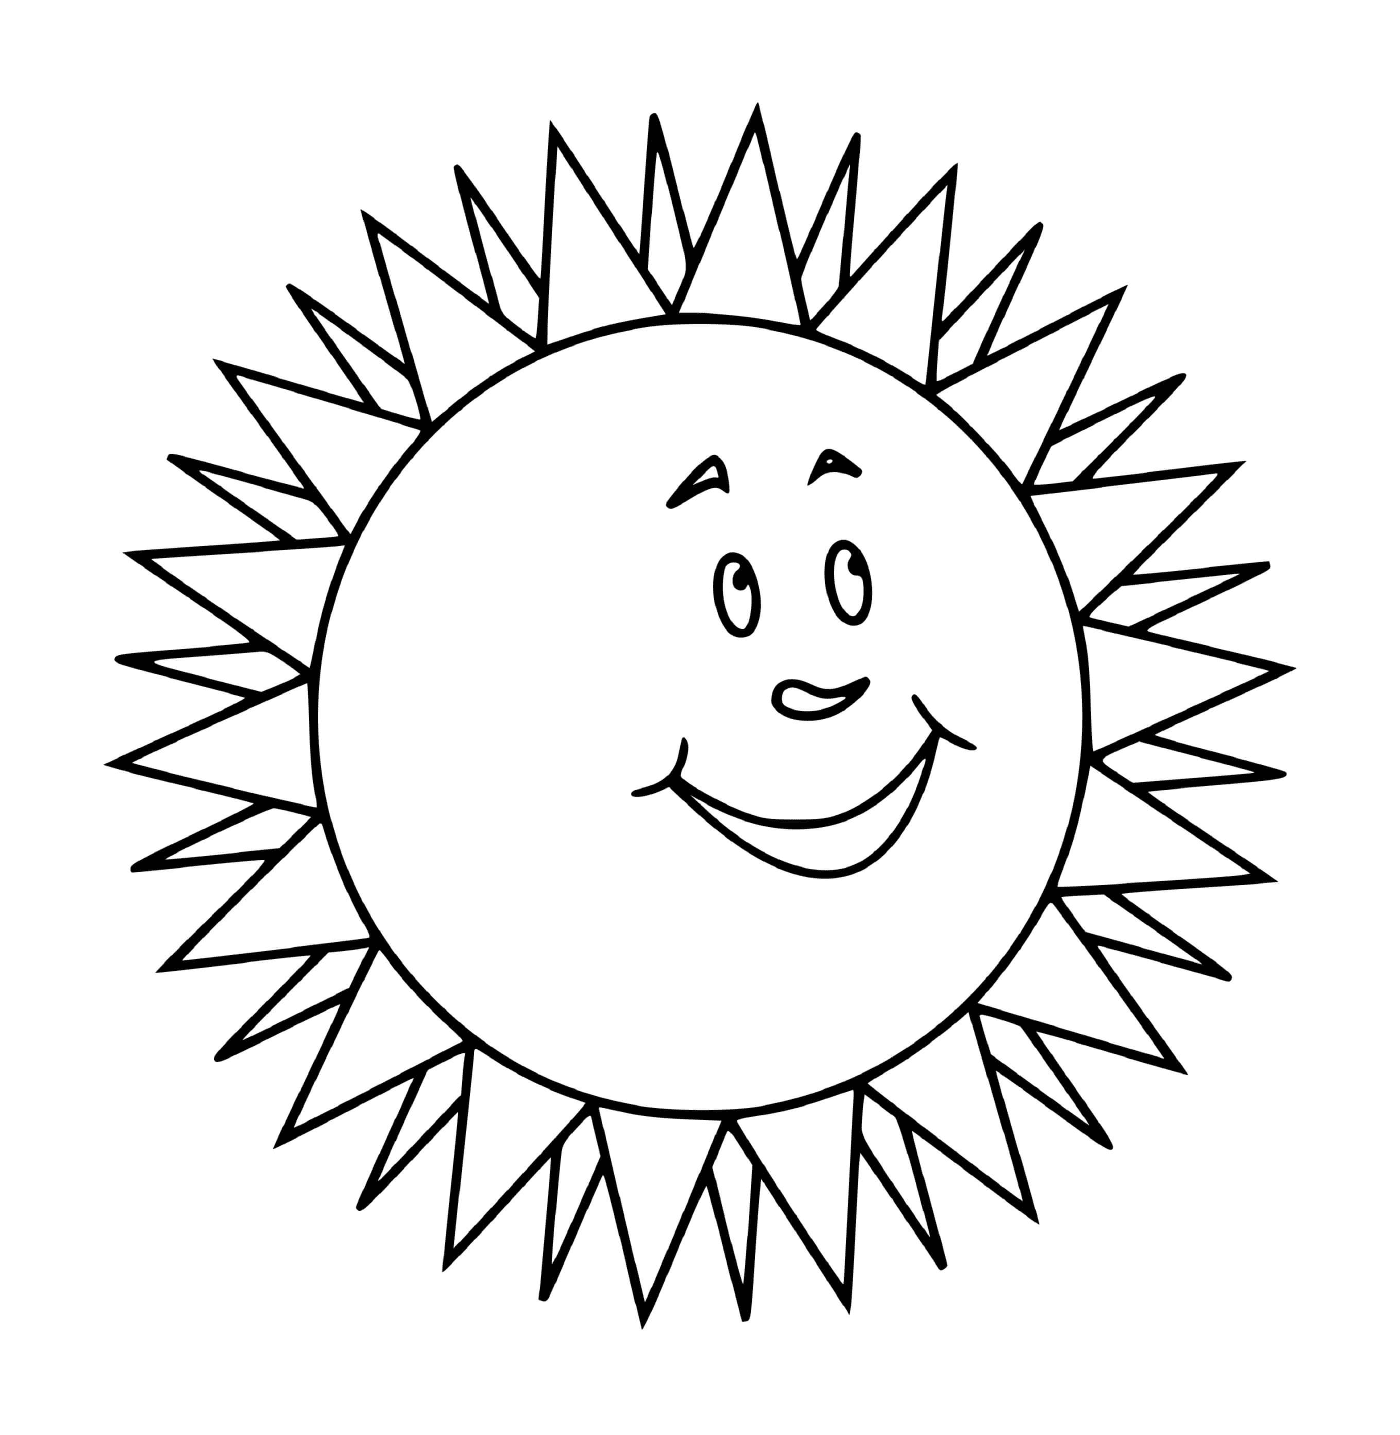  Lächelnde Sonne mit Strahlung 